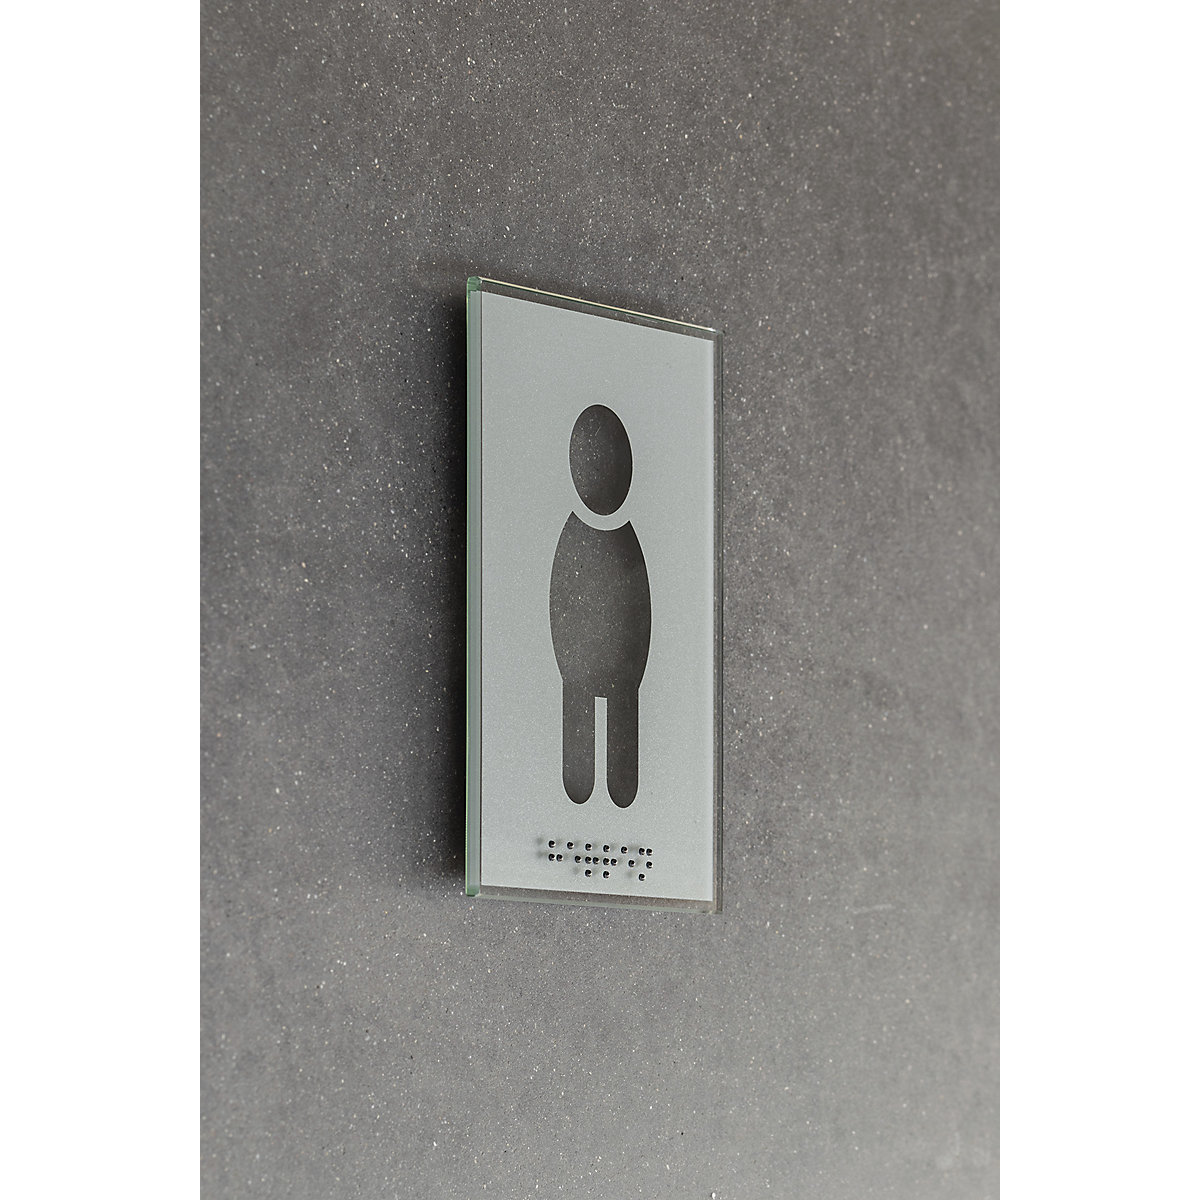 Plaque de porte pictogramme WC, en braille